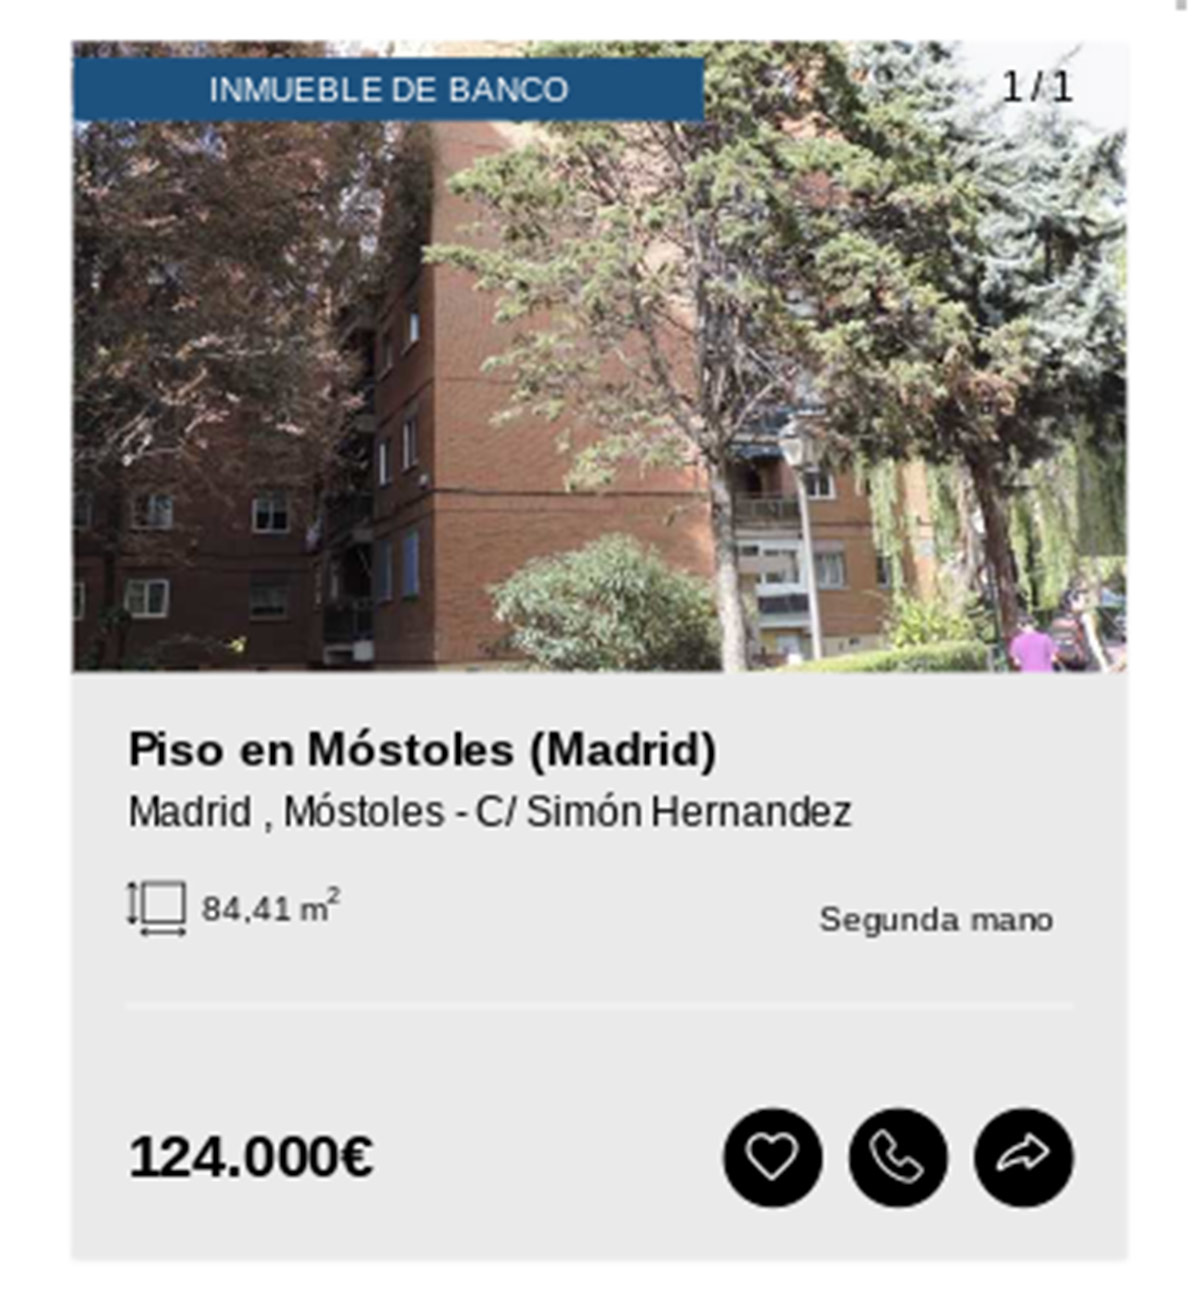 Piso en Madrid de Solvia por 124.000 euros